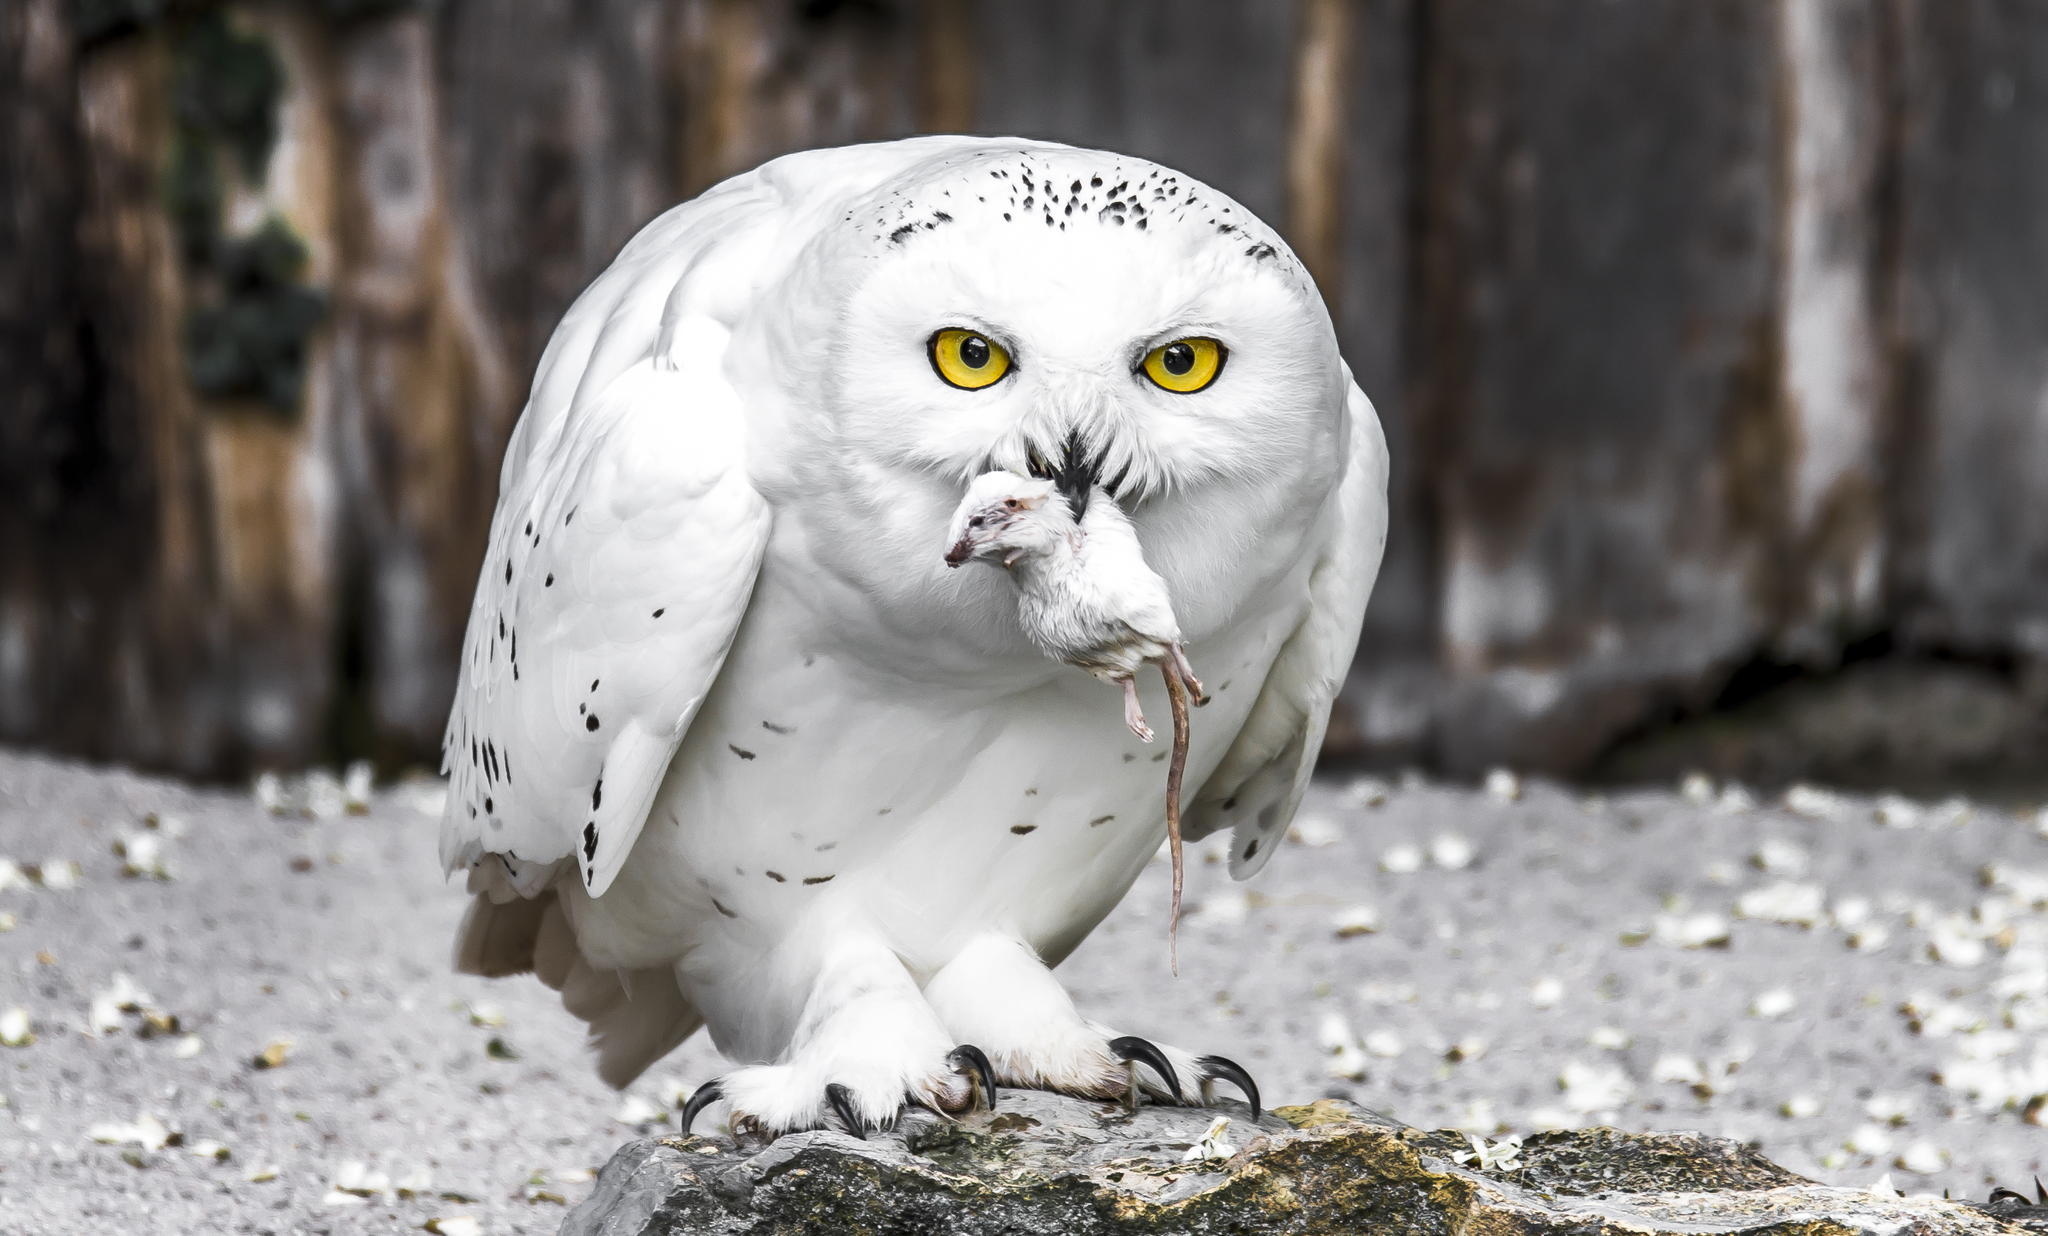 Polar owl nga may tukbonon